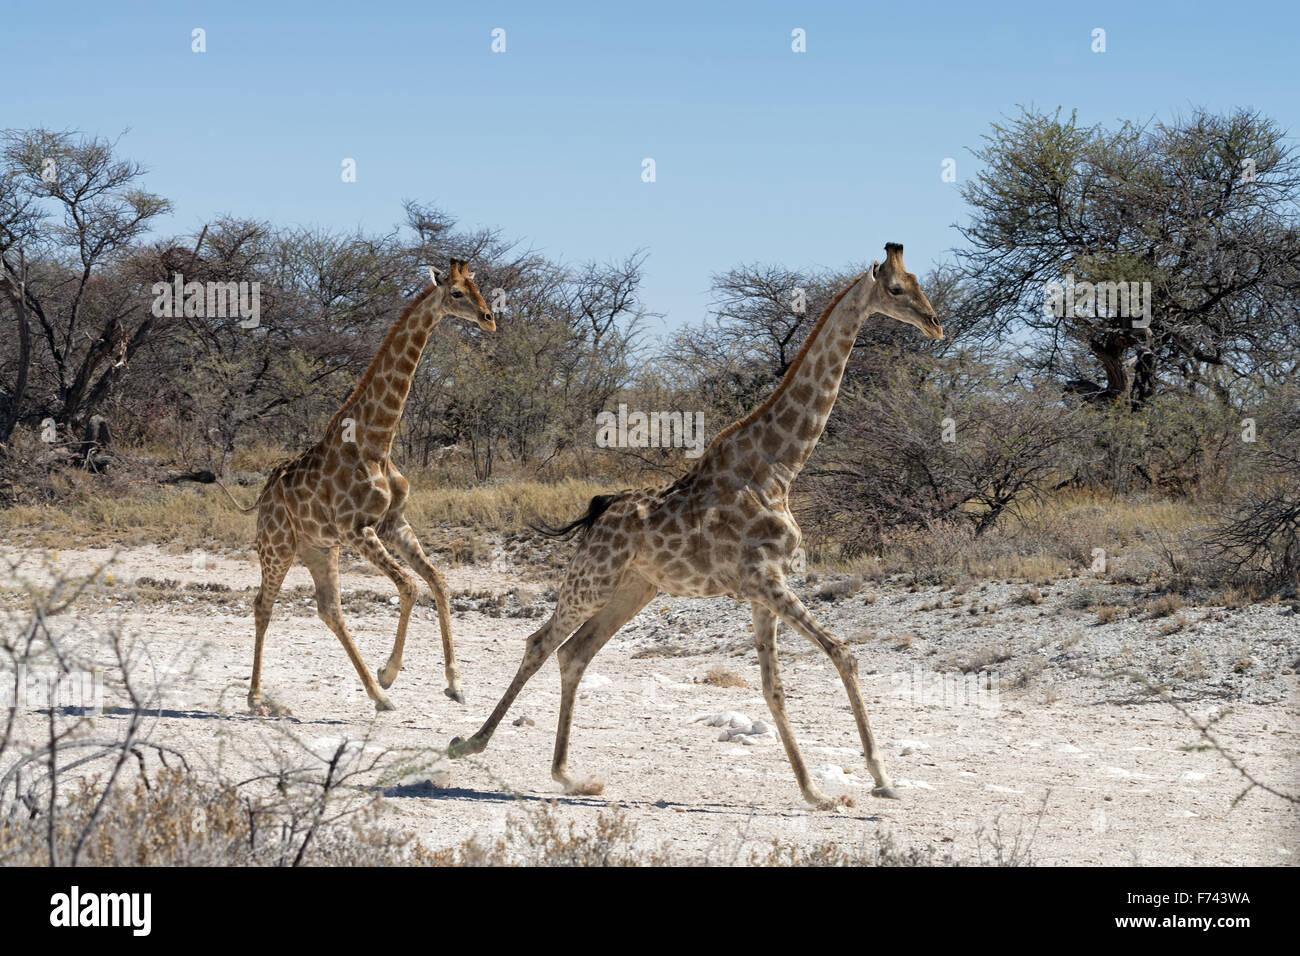 Deux girafes namibienne (Giraffa camelopardalis angolensis) s'exécutant dans le parc national d'Etosha, Namibie Banque D'Images